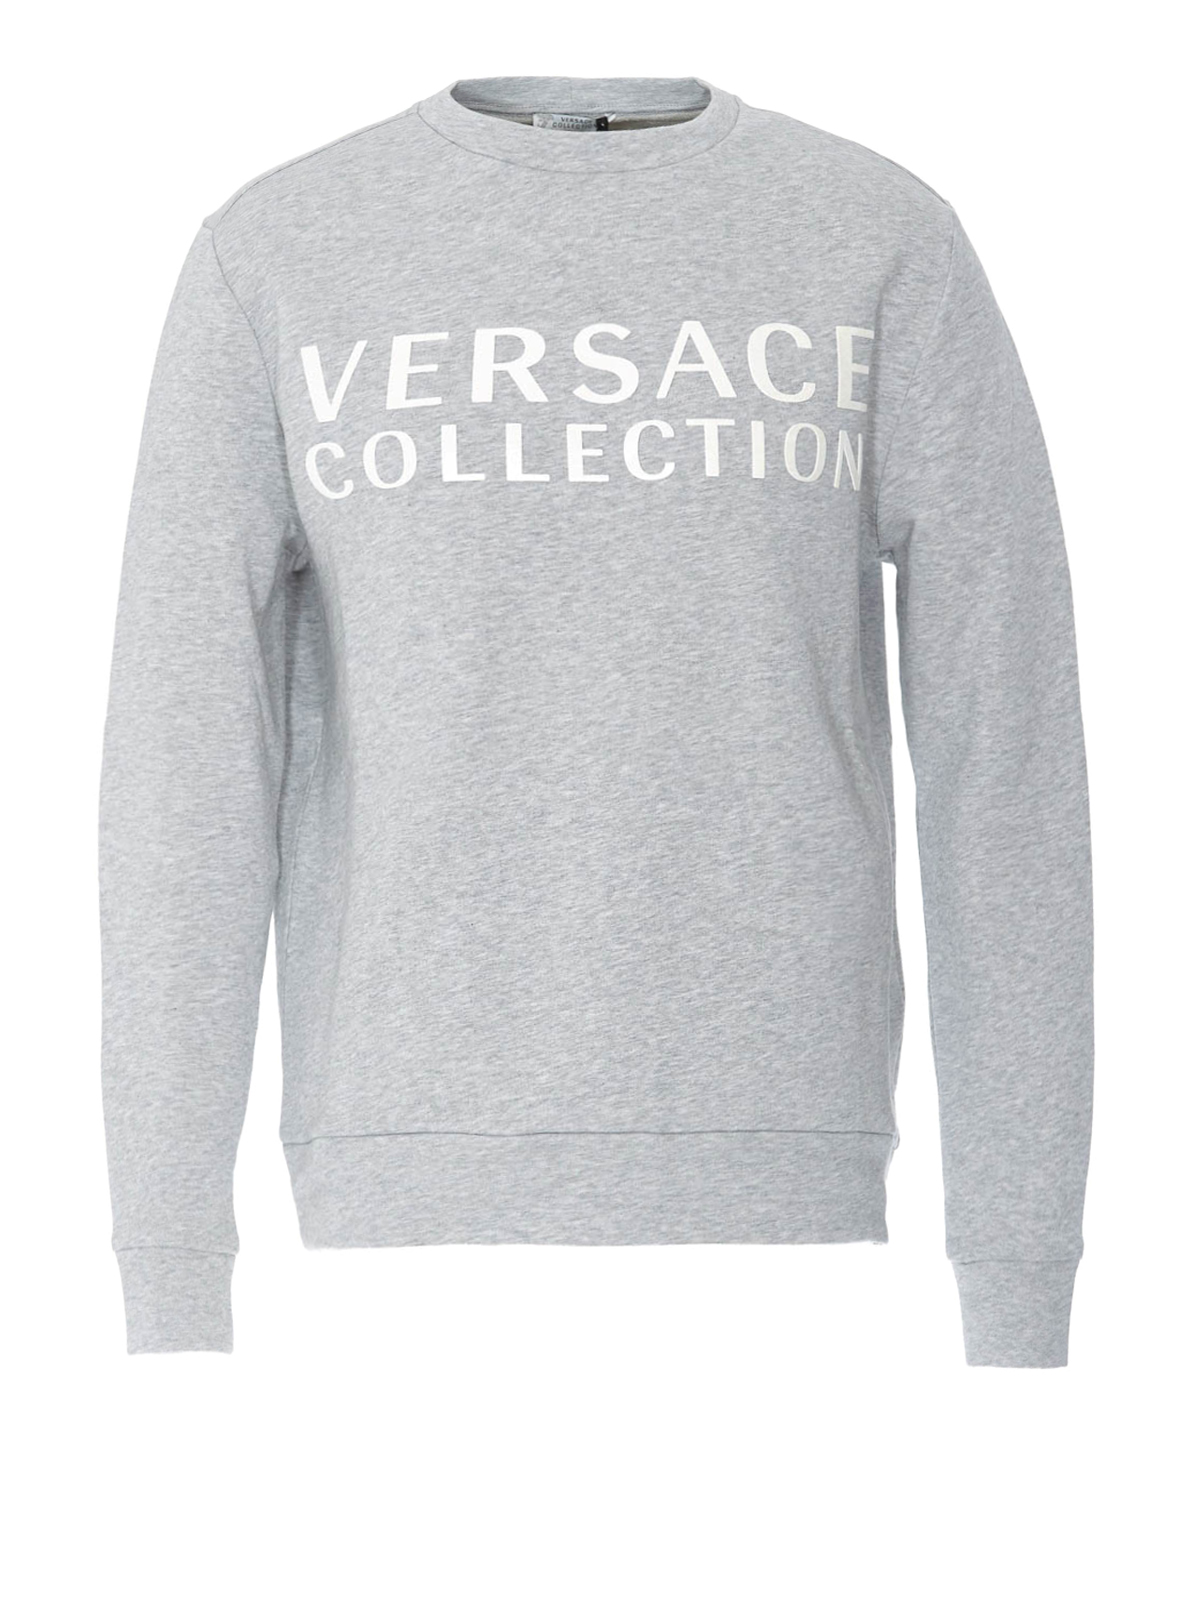 versace collection logo